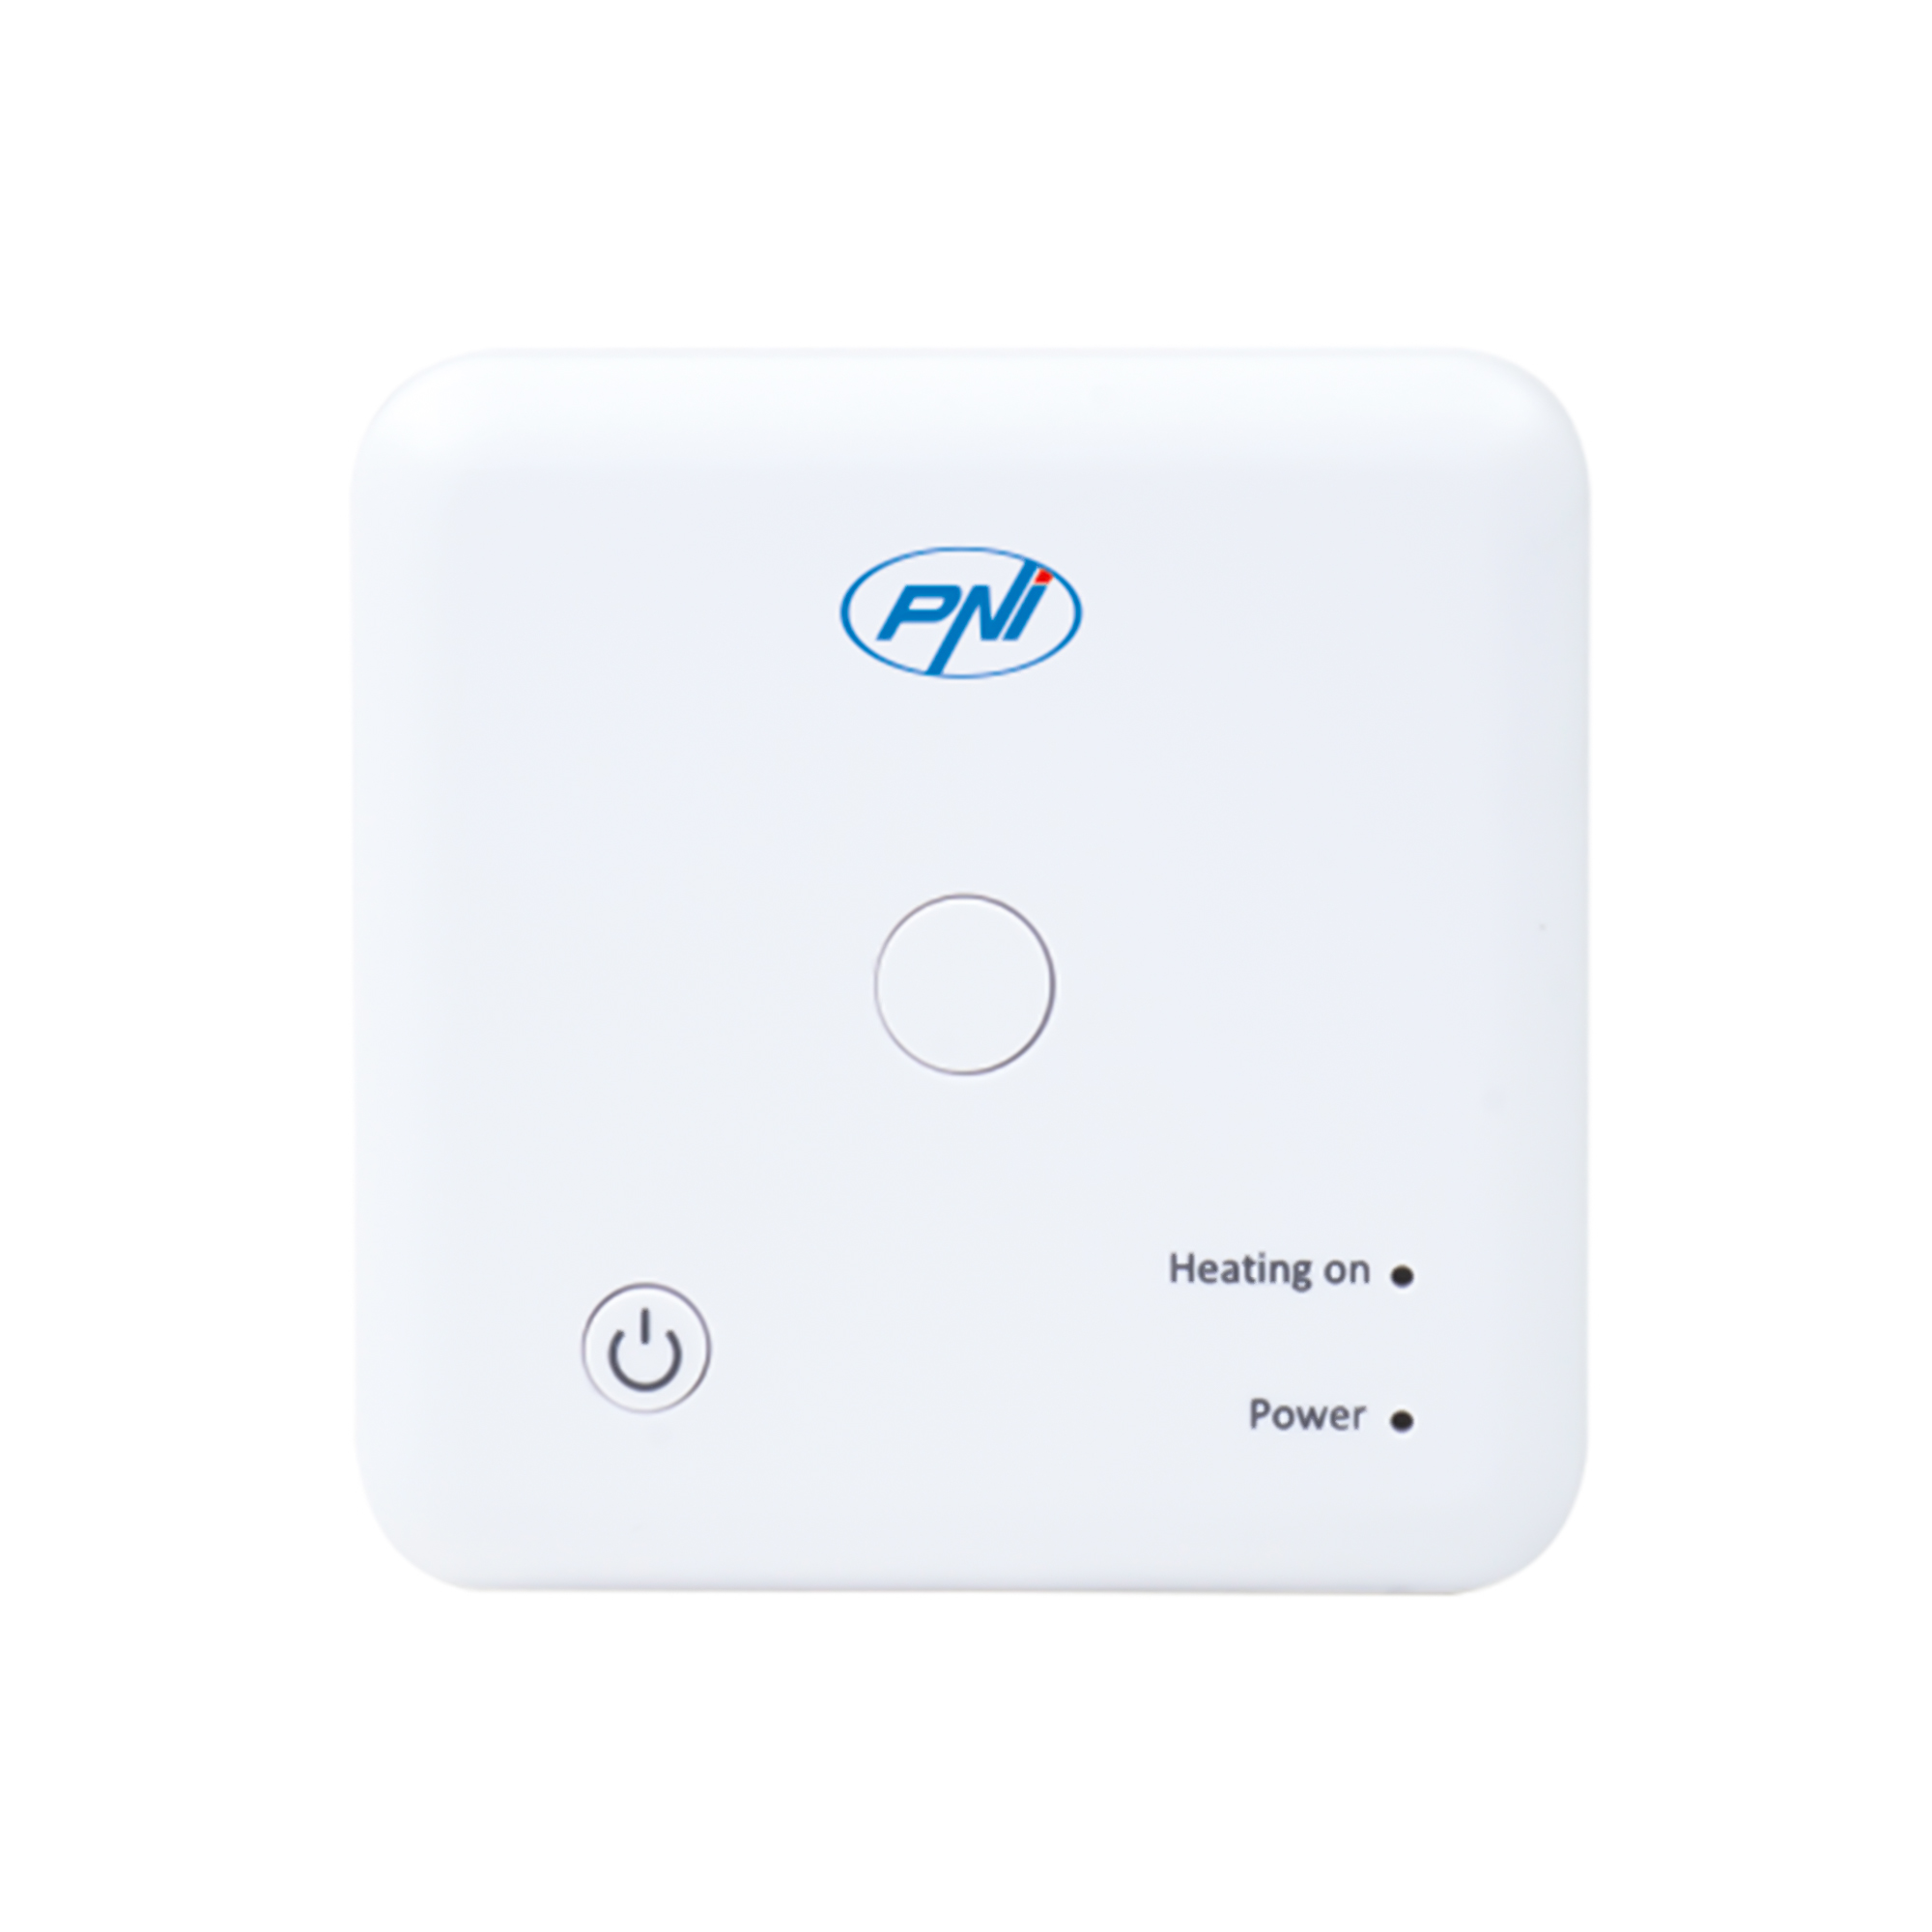 Termostat inteligent PNI CT36 fara fir, cu WiFi, control prin Internet, pentru centrale termice, APP TuyaSmart image3